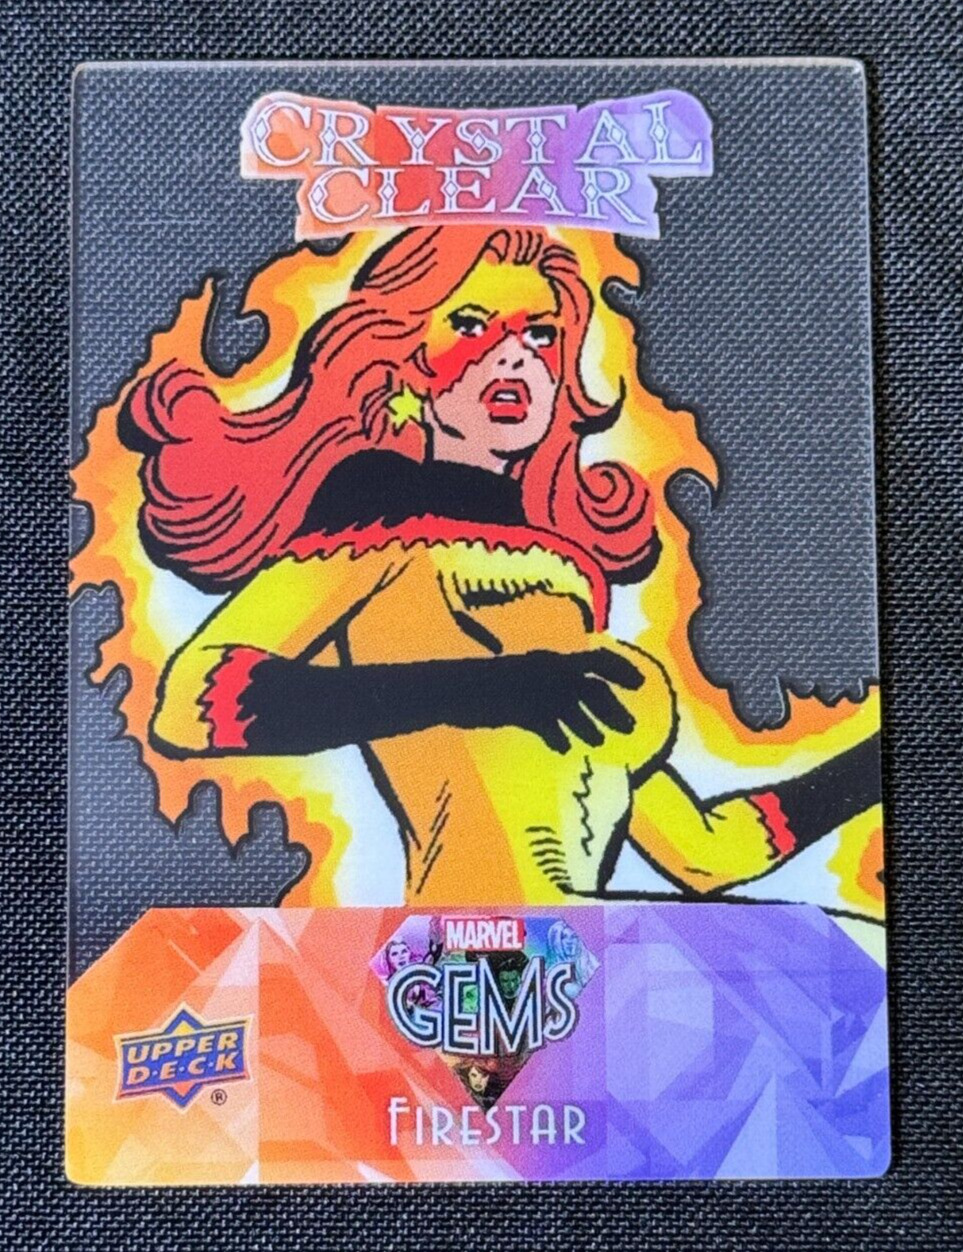 Firestar 2016 Upper Deck Marvel Gems Crystal Clear Card #CC-15